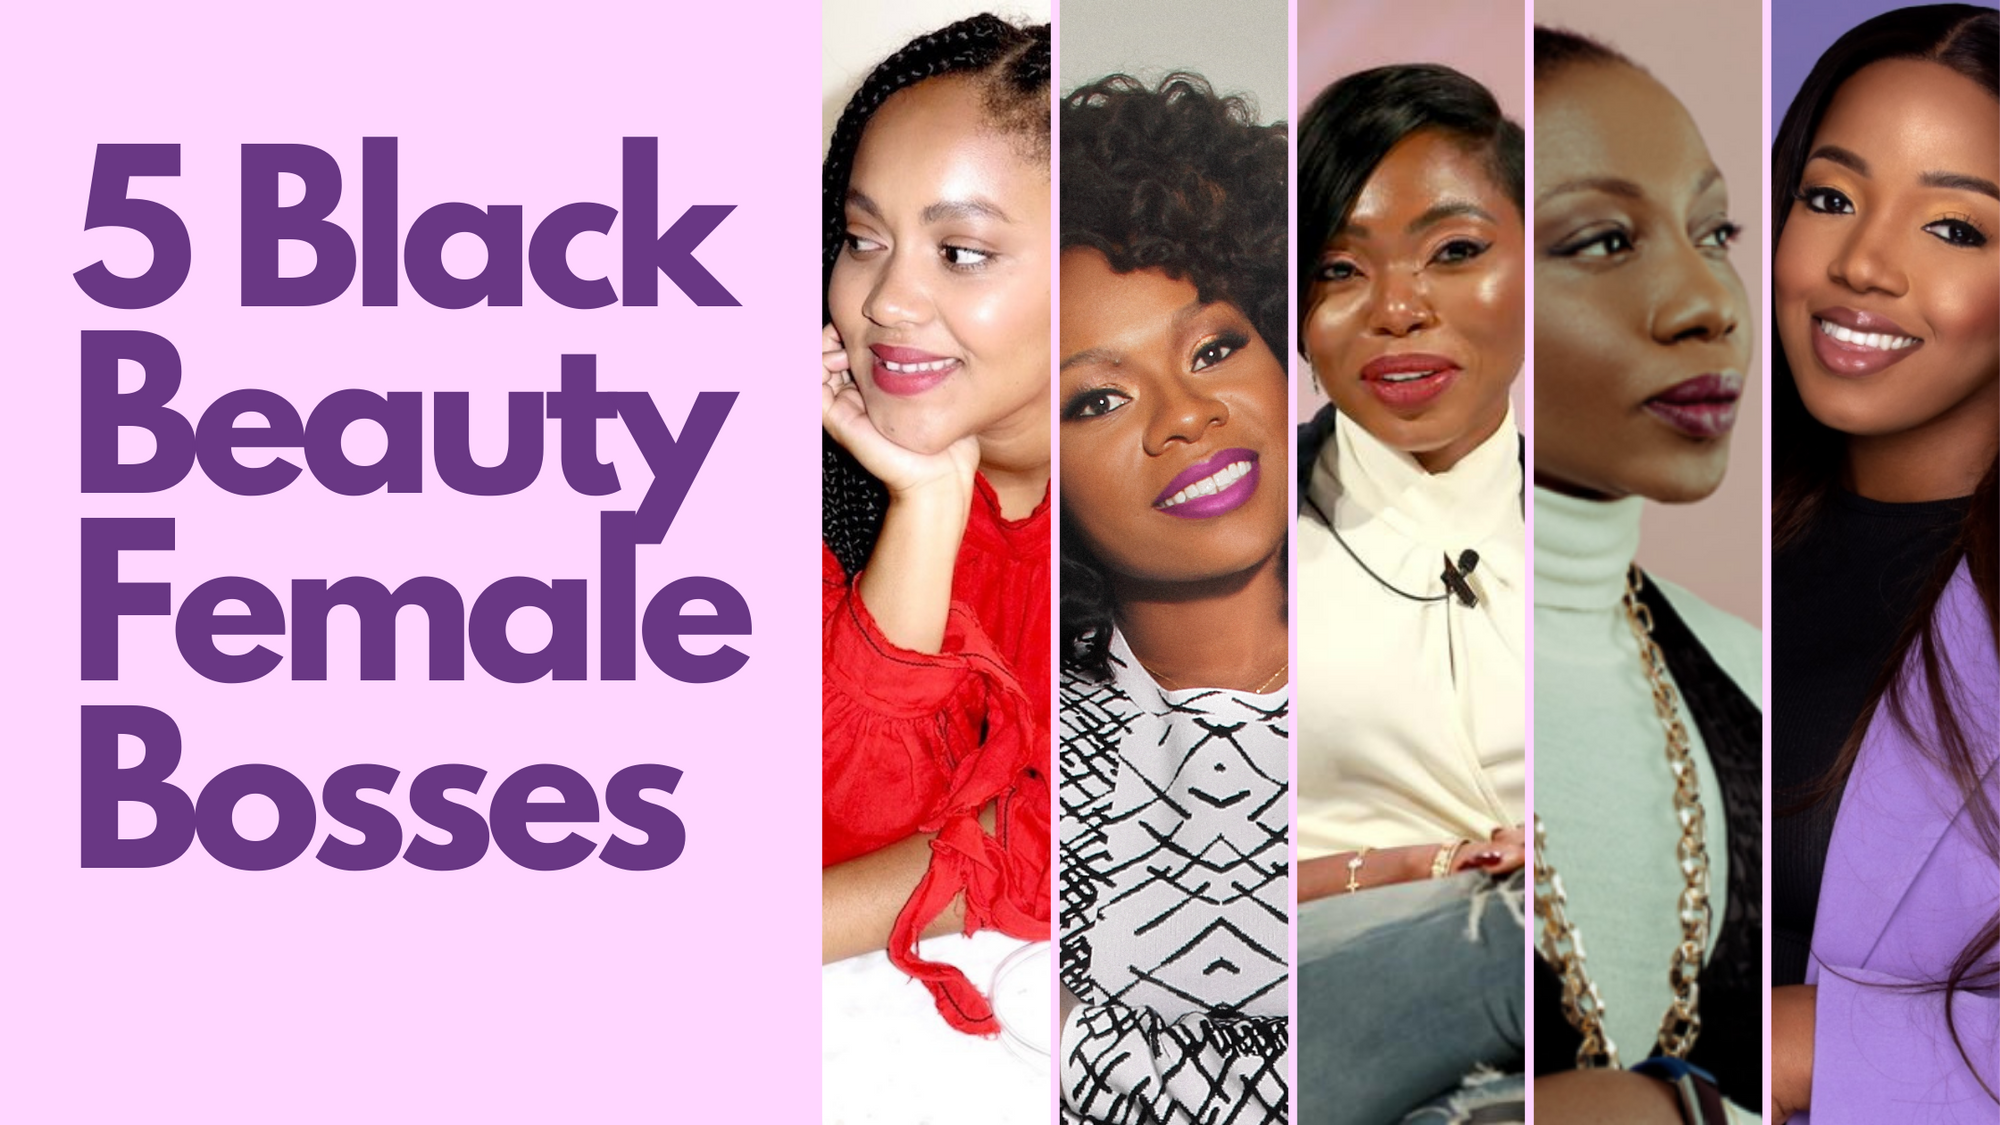 5 Black Beauty Female Bosses Entrepreneurs in Beauty